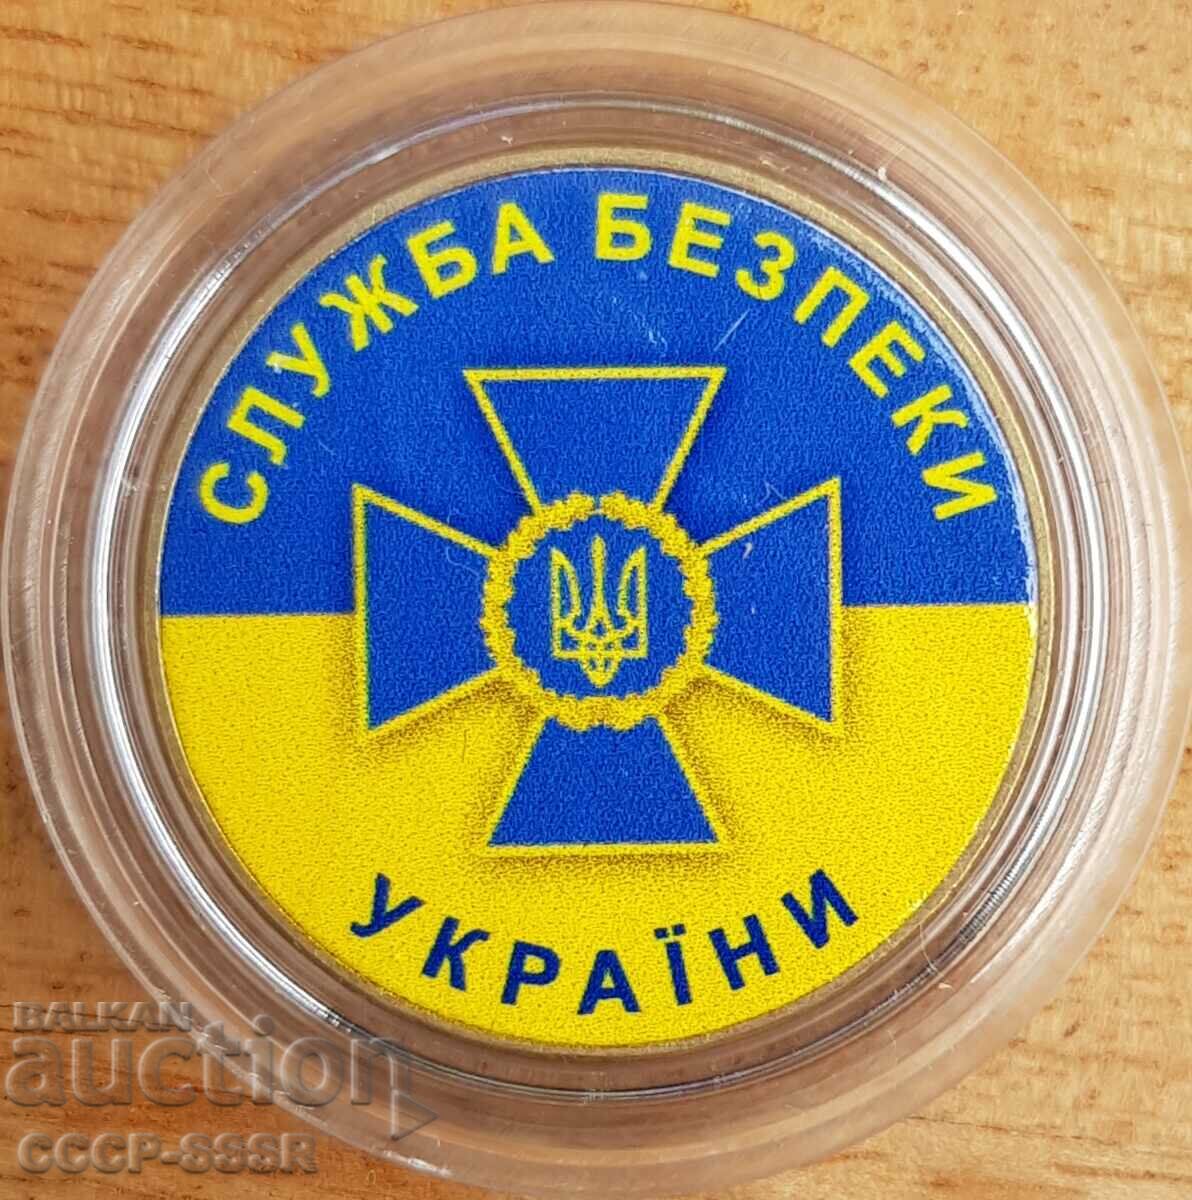 Ουκρανία 1 g, SBU Ukraine (κρατική ασφάλεια), έκδοση ορίου